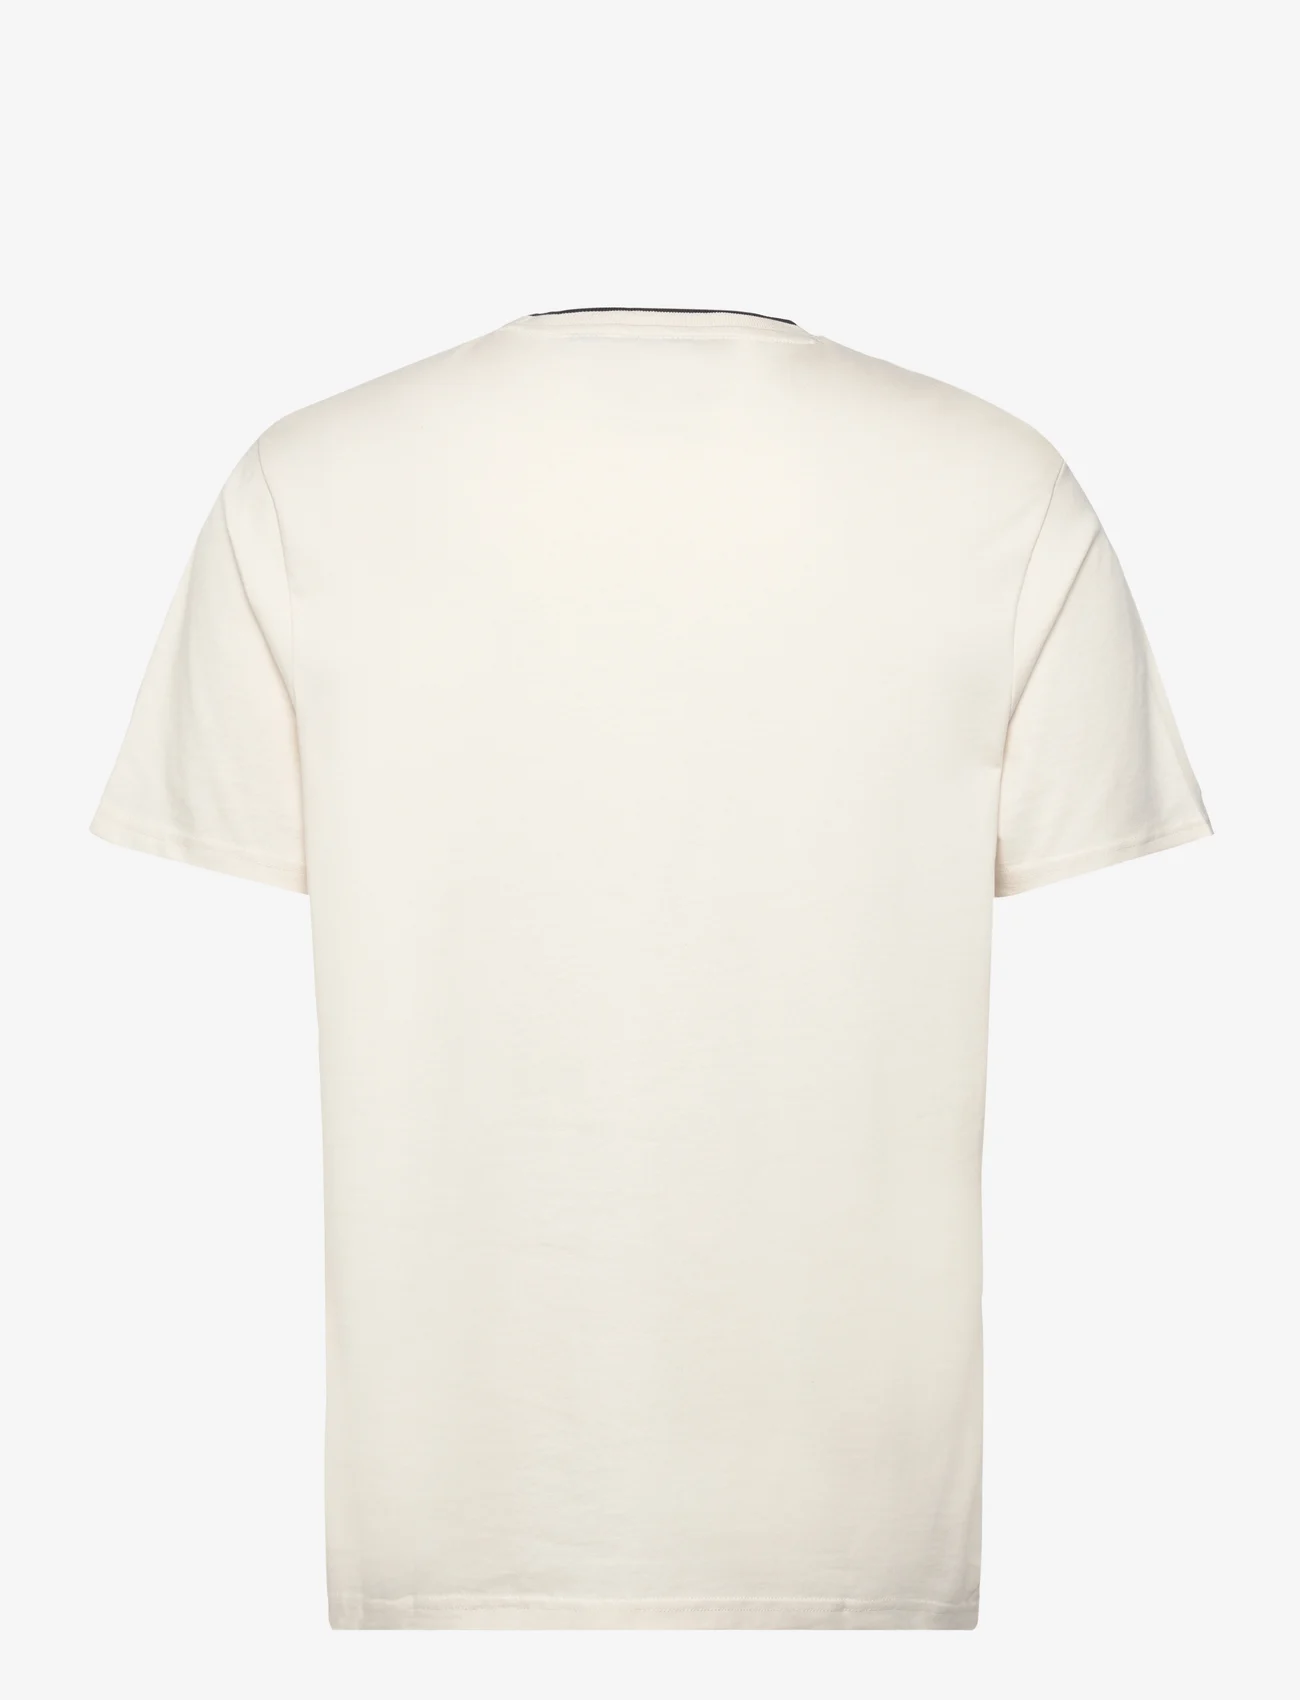 Lyle & Scott - Tipped T-shirt - najniższe ceny - x296 chalk/ gunmetal - 1